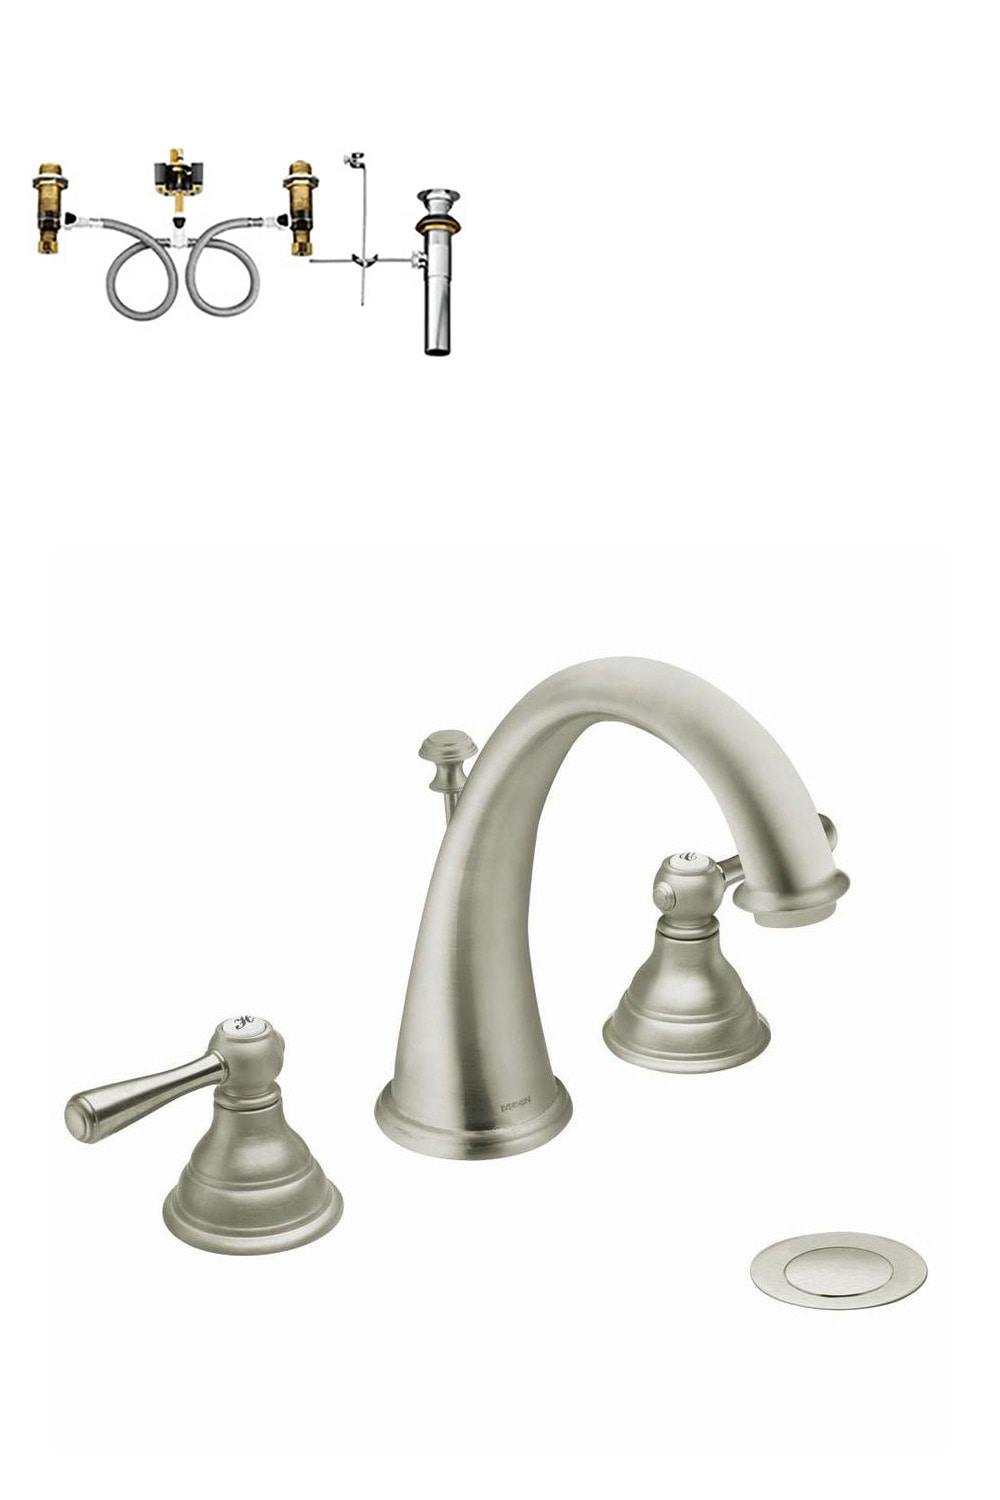 Kingsley Brushed Nickel Widespread 2-handle WaterSense Bathroom Sink Faucet with Drain | - Moen T6125BN-9000-L